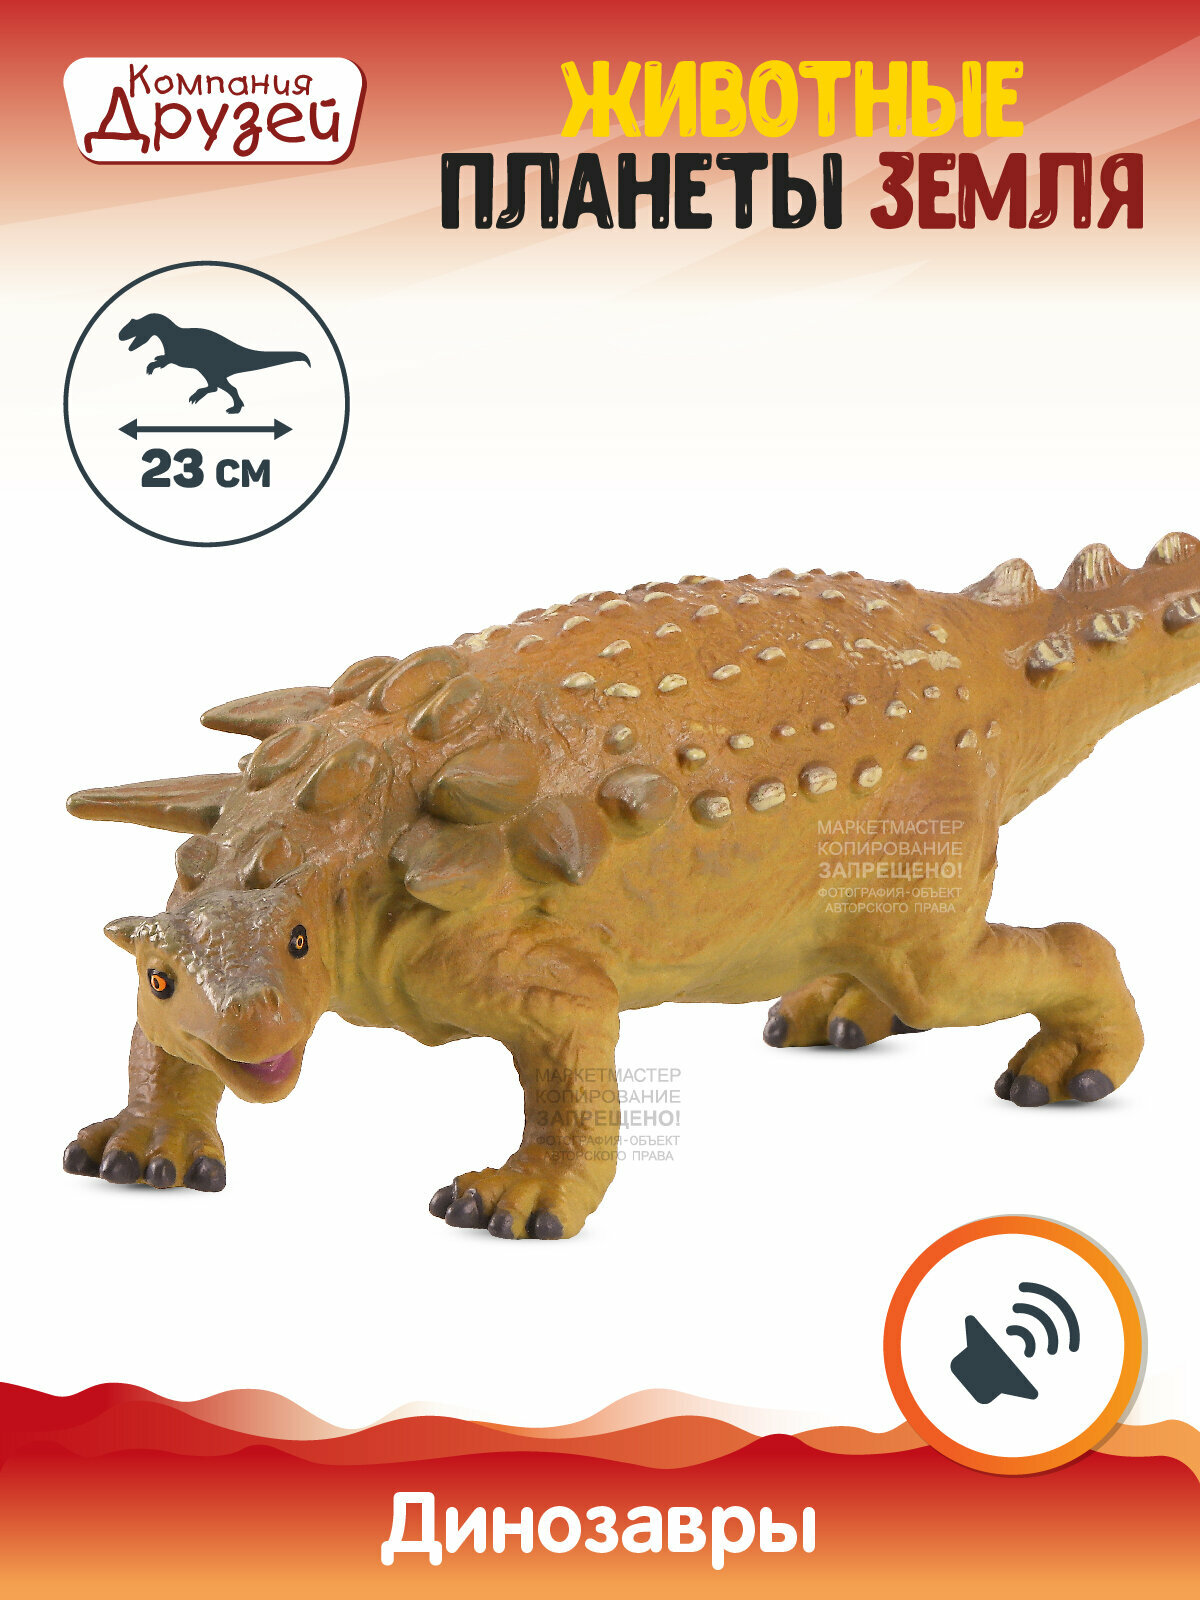 Игрушка для детей Динозавр ТМ компания друзей, серия Животные планеты Земля, игрушечное доисторическое животное, эластичный пластик, JB0208304